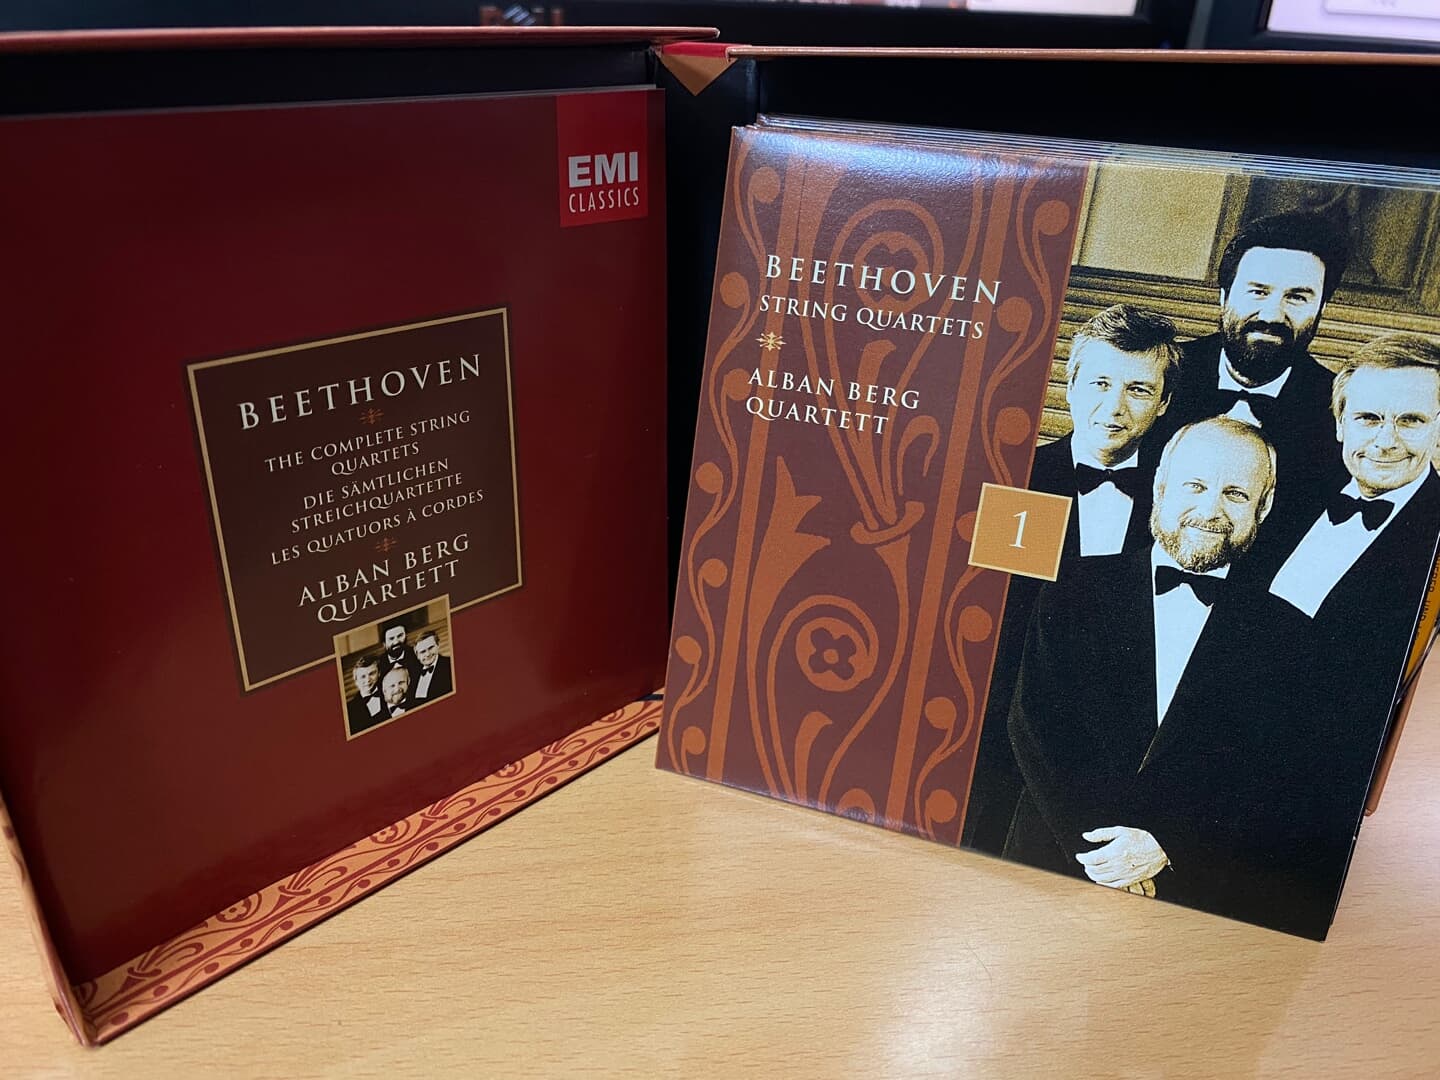 알반 베르크 콰르텟 - Alban Berg Quartett - Beethoven The Complete String Quartets 7Cds [Box] [E.U발매]